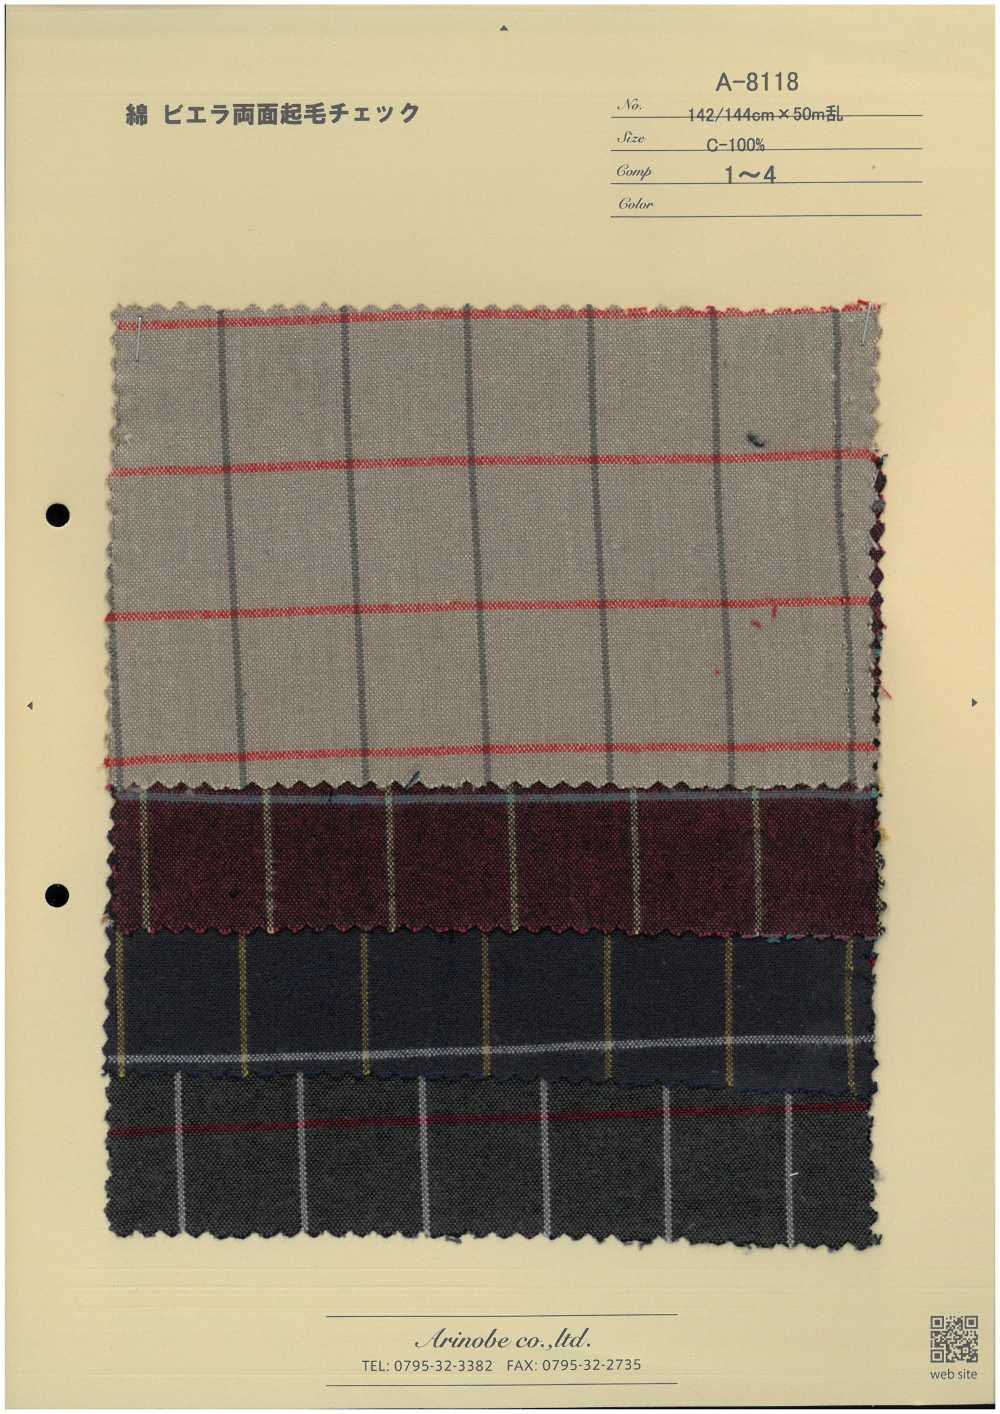 A-8118 Doppelseitiges Viyella-Karomuster Aus Flauschiger Baumwolle[Textilgewebe] ARINOBE CO., LTD.